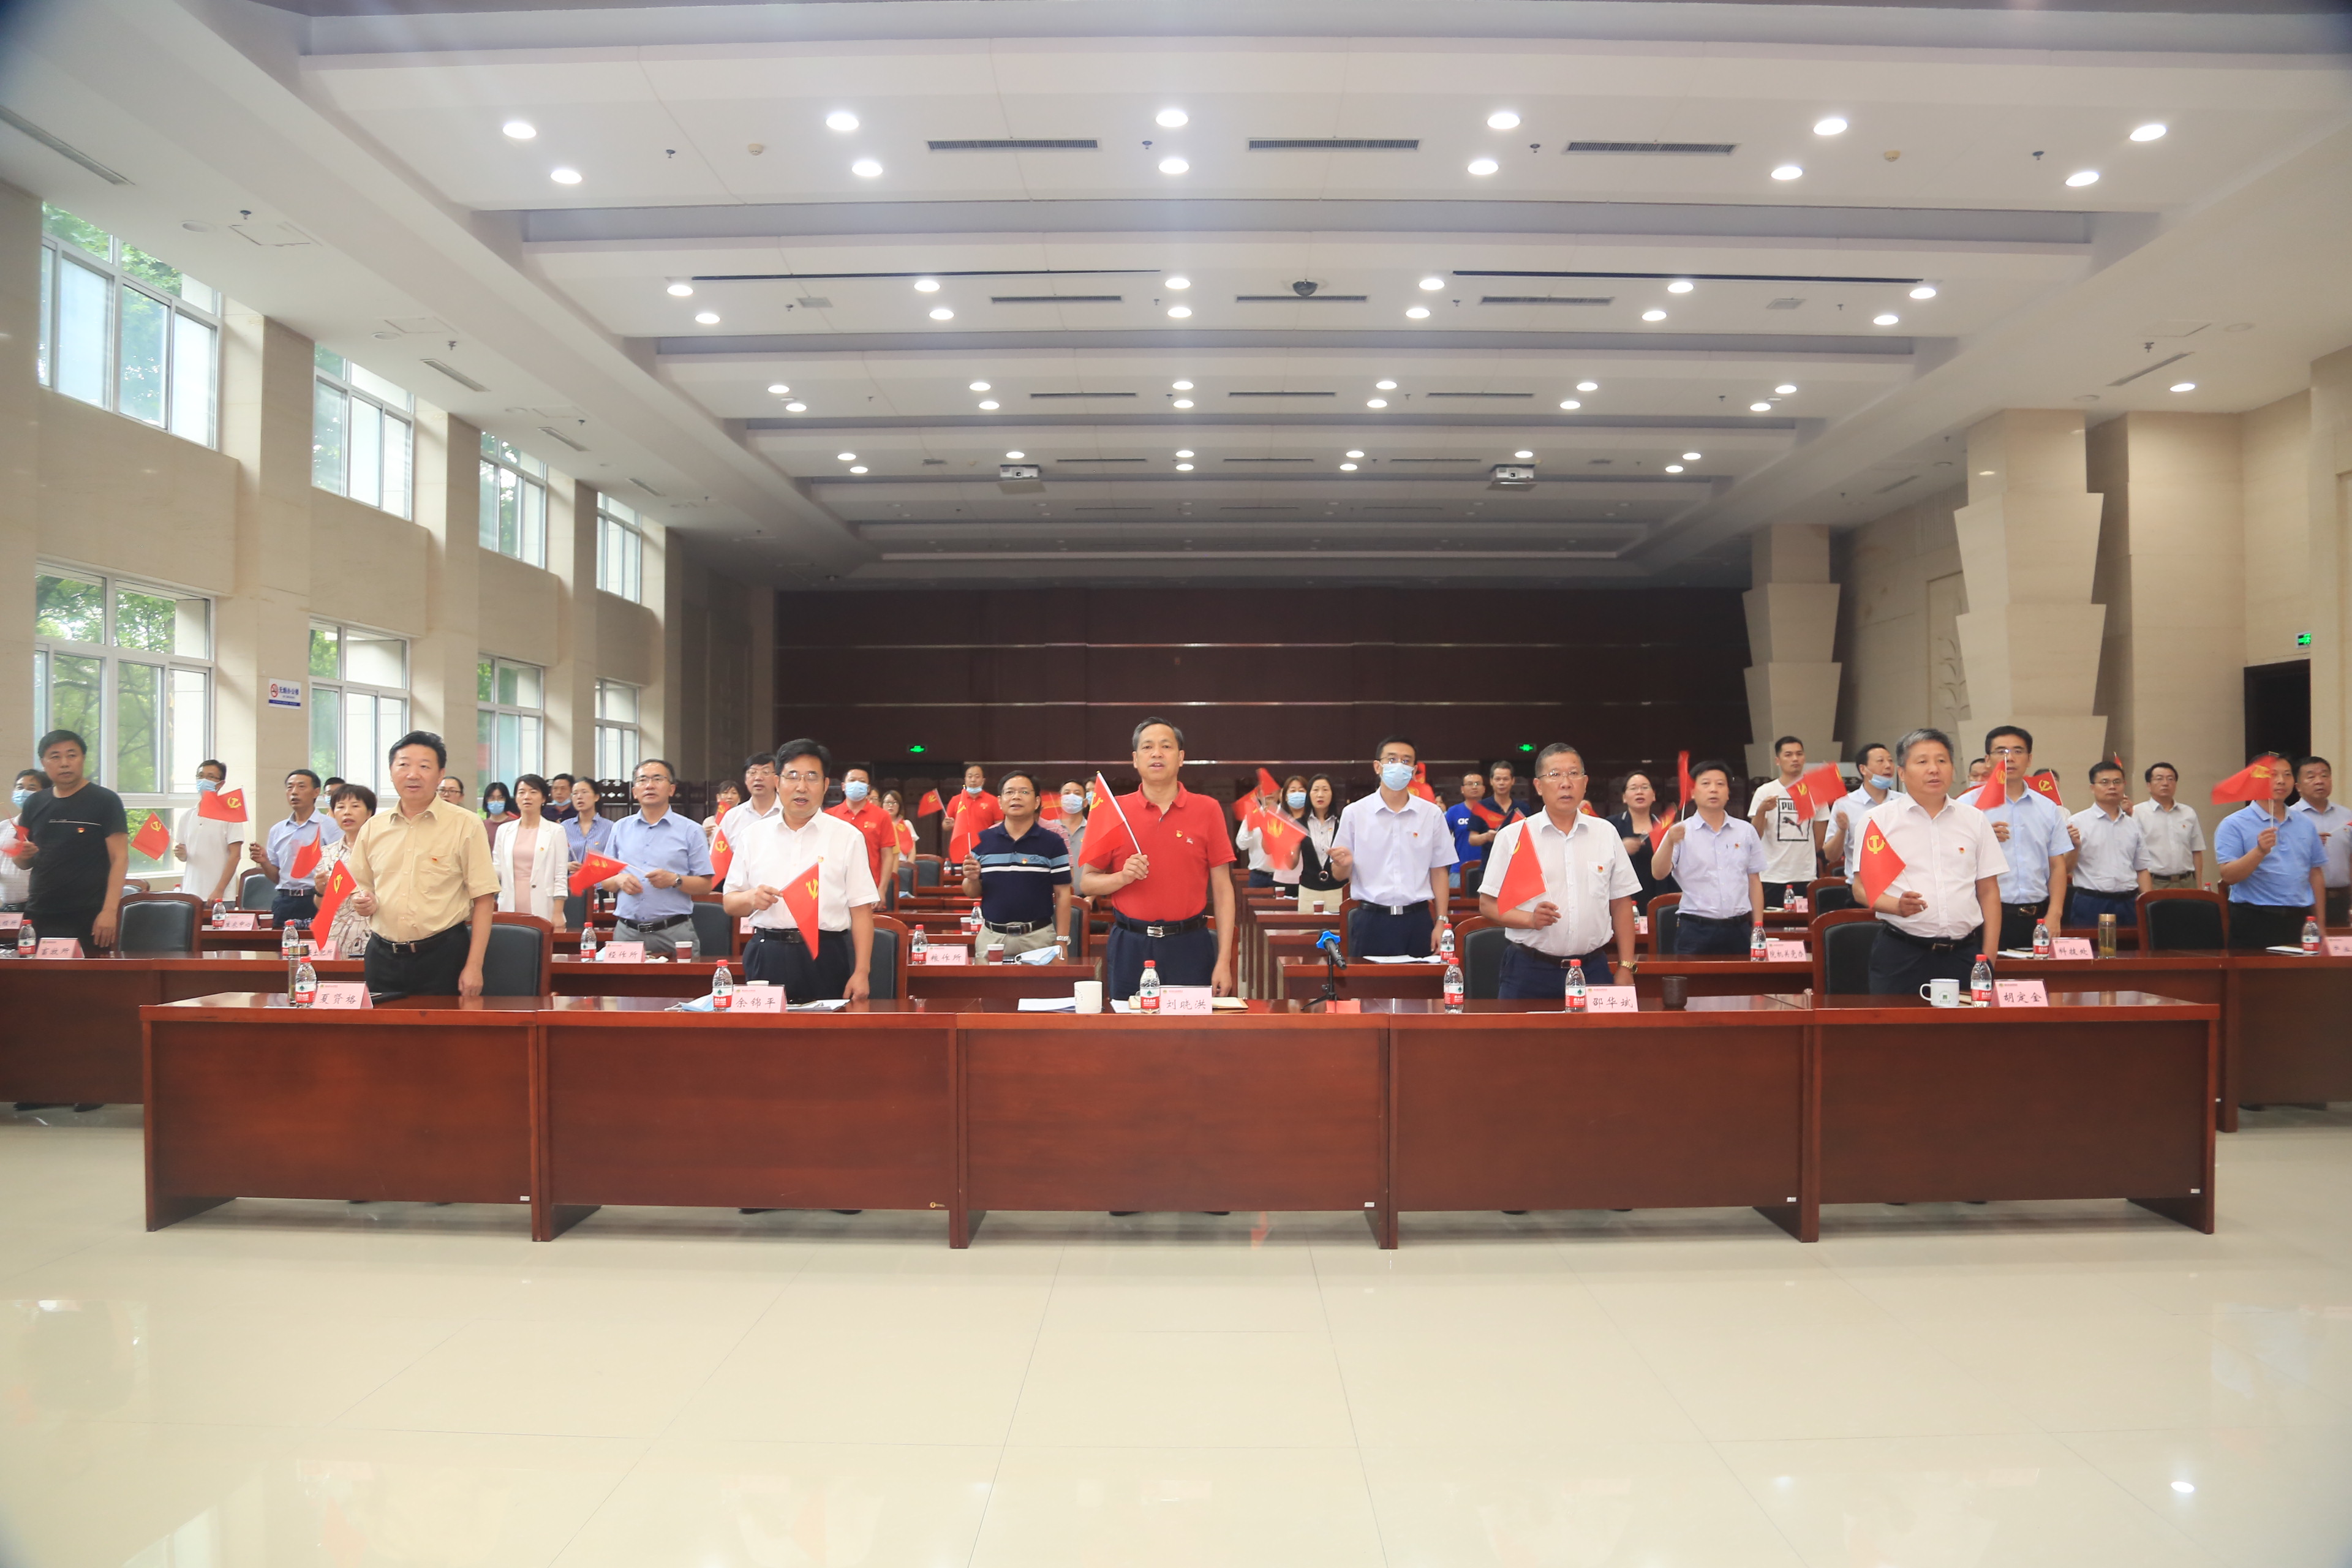  湖北省农科院科技人员热议习近平总书记“七一”重要讲话